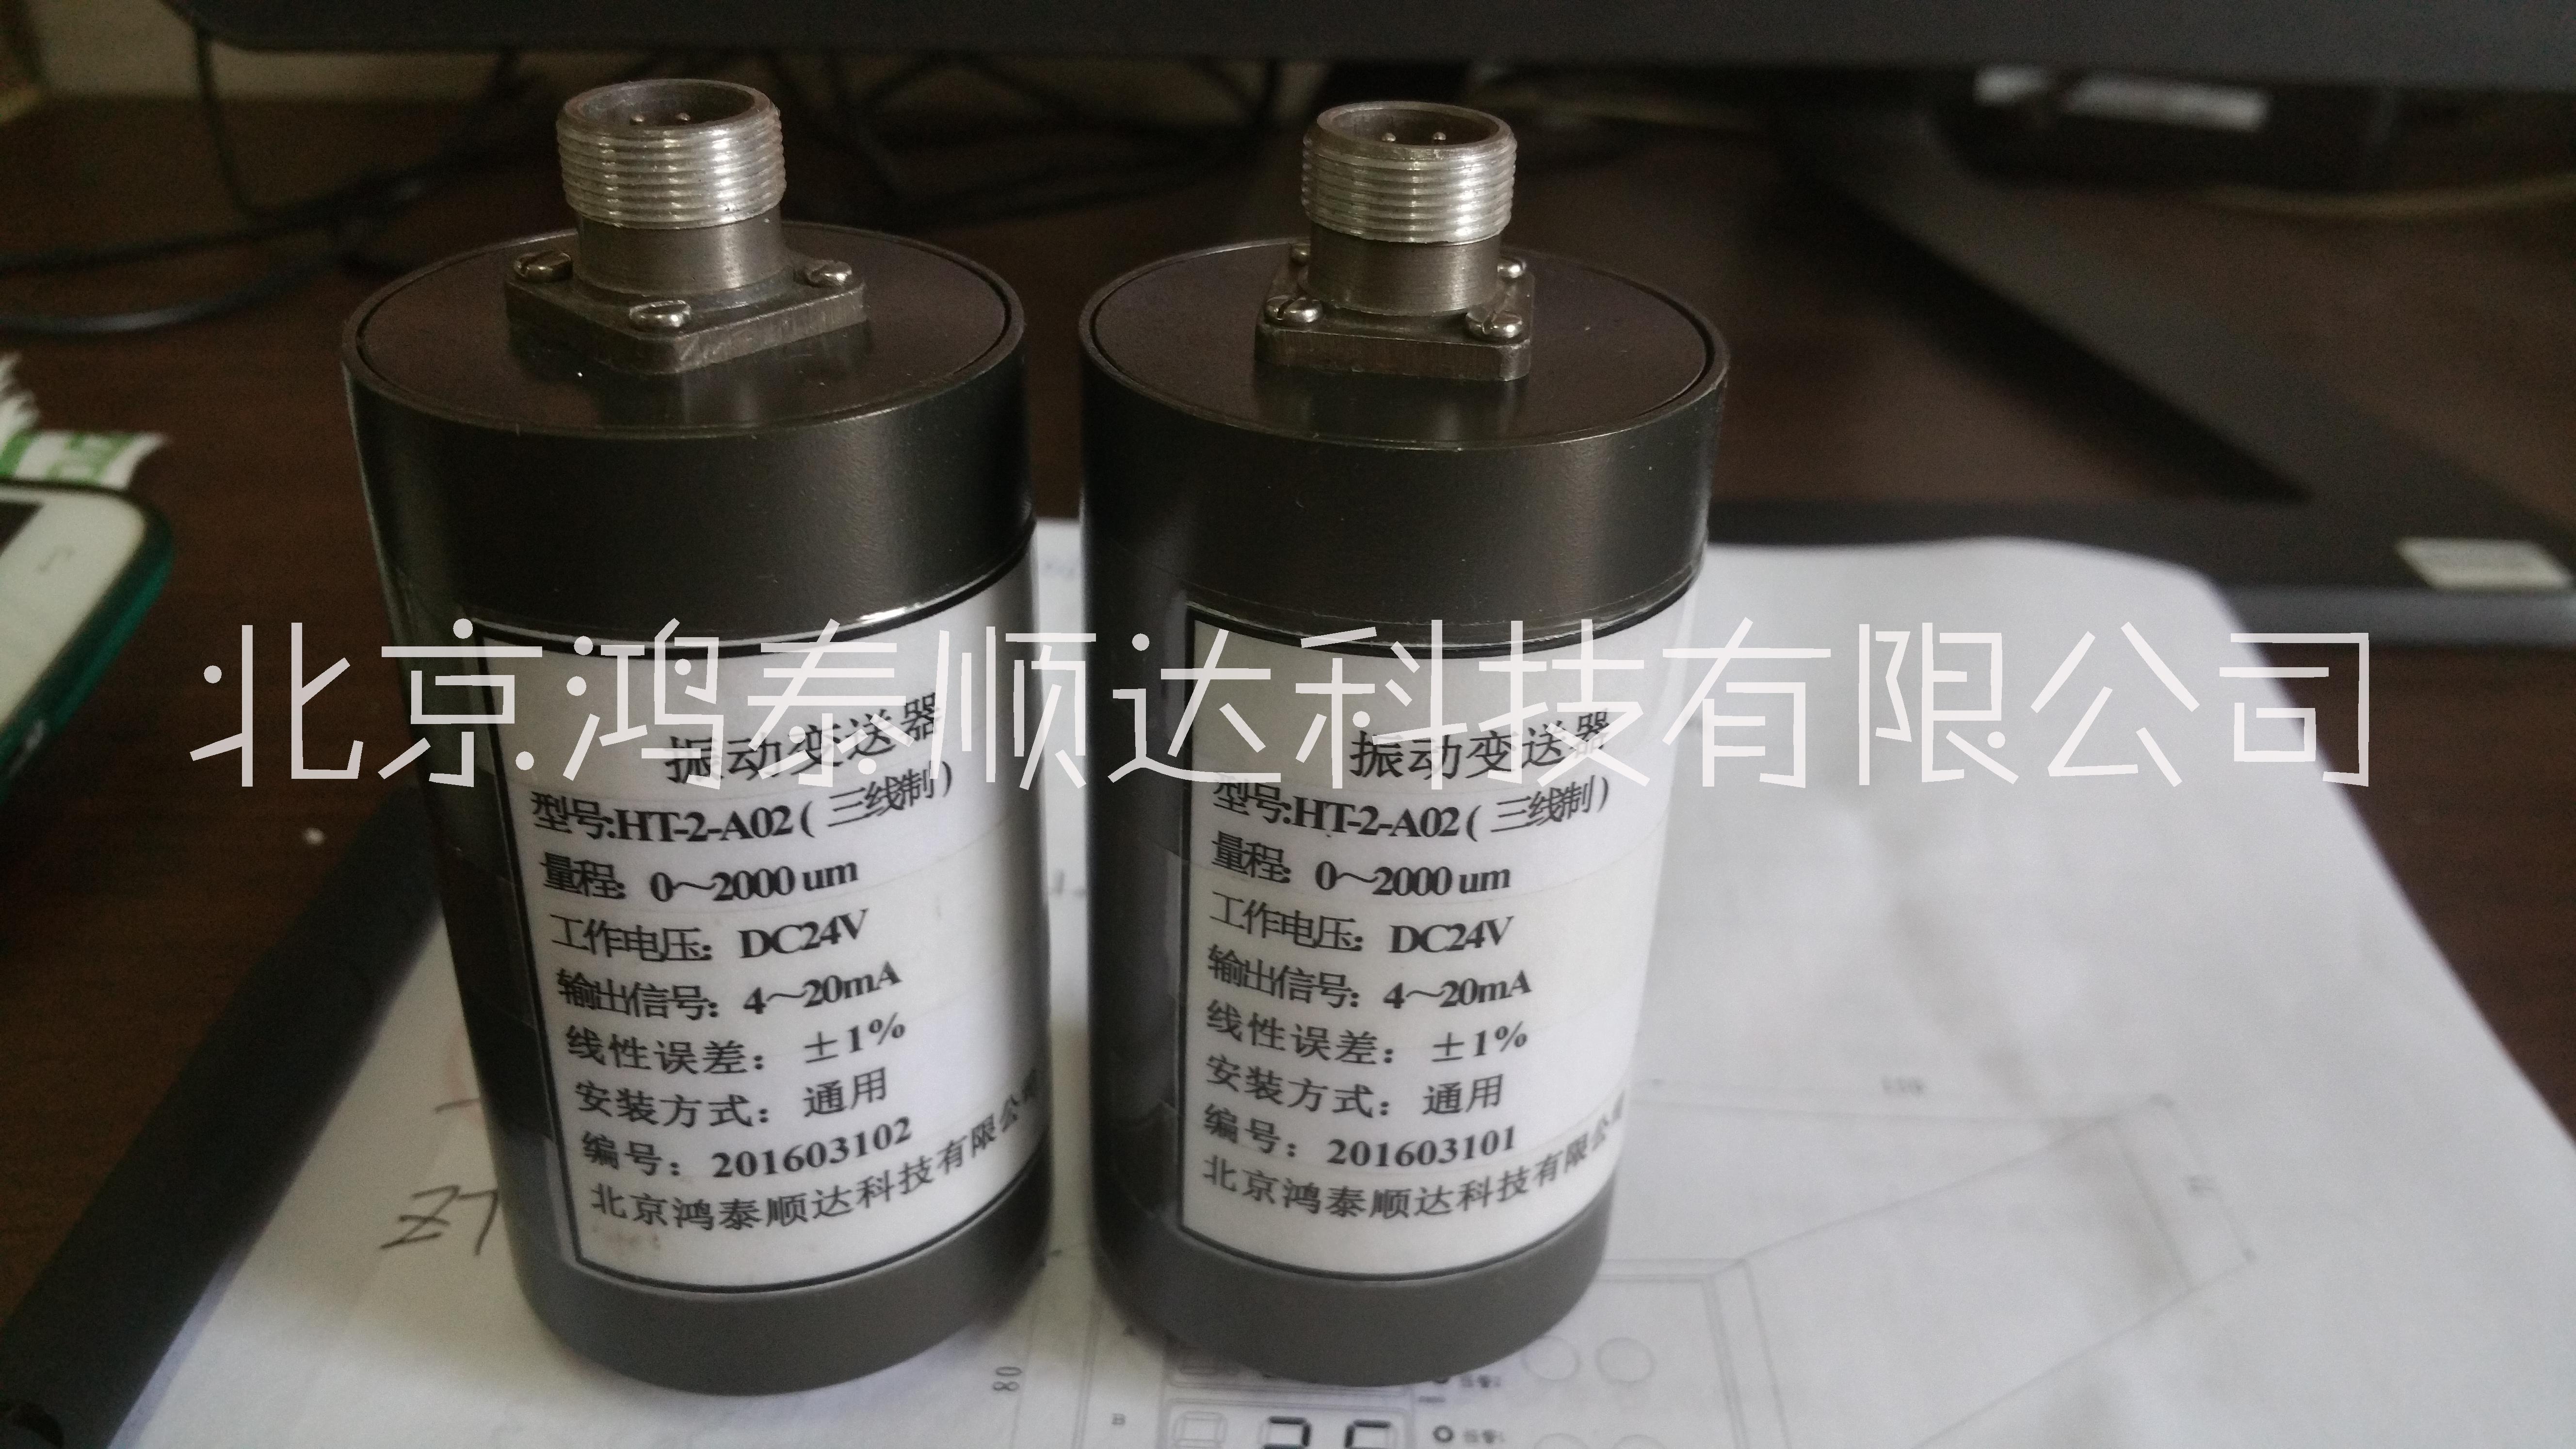 HT-2-A01一体化振动变送器优选北京鸿泰顺达科技；HT-2-A01一体化振动变送器北京正宗品牌产品|实物图片|技术规